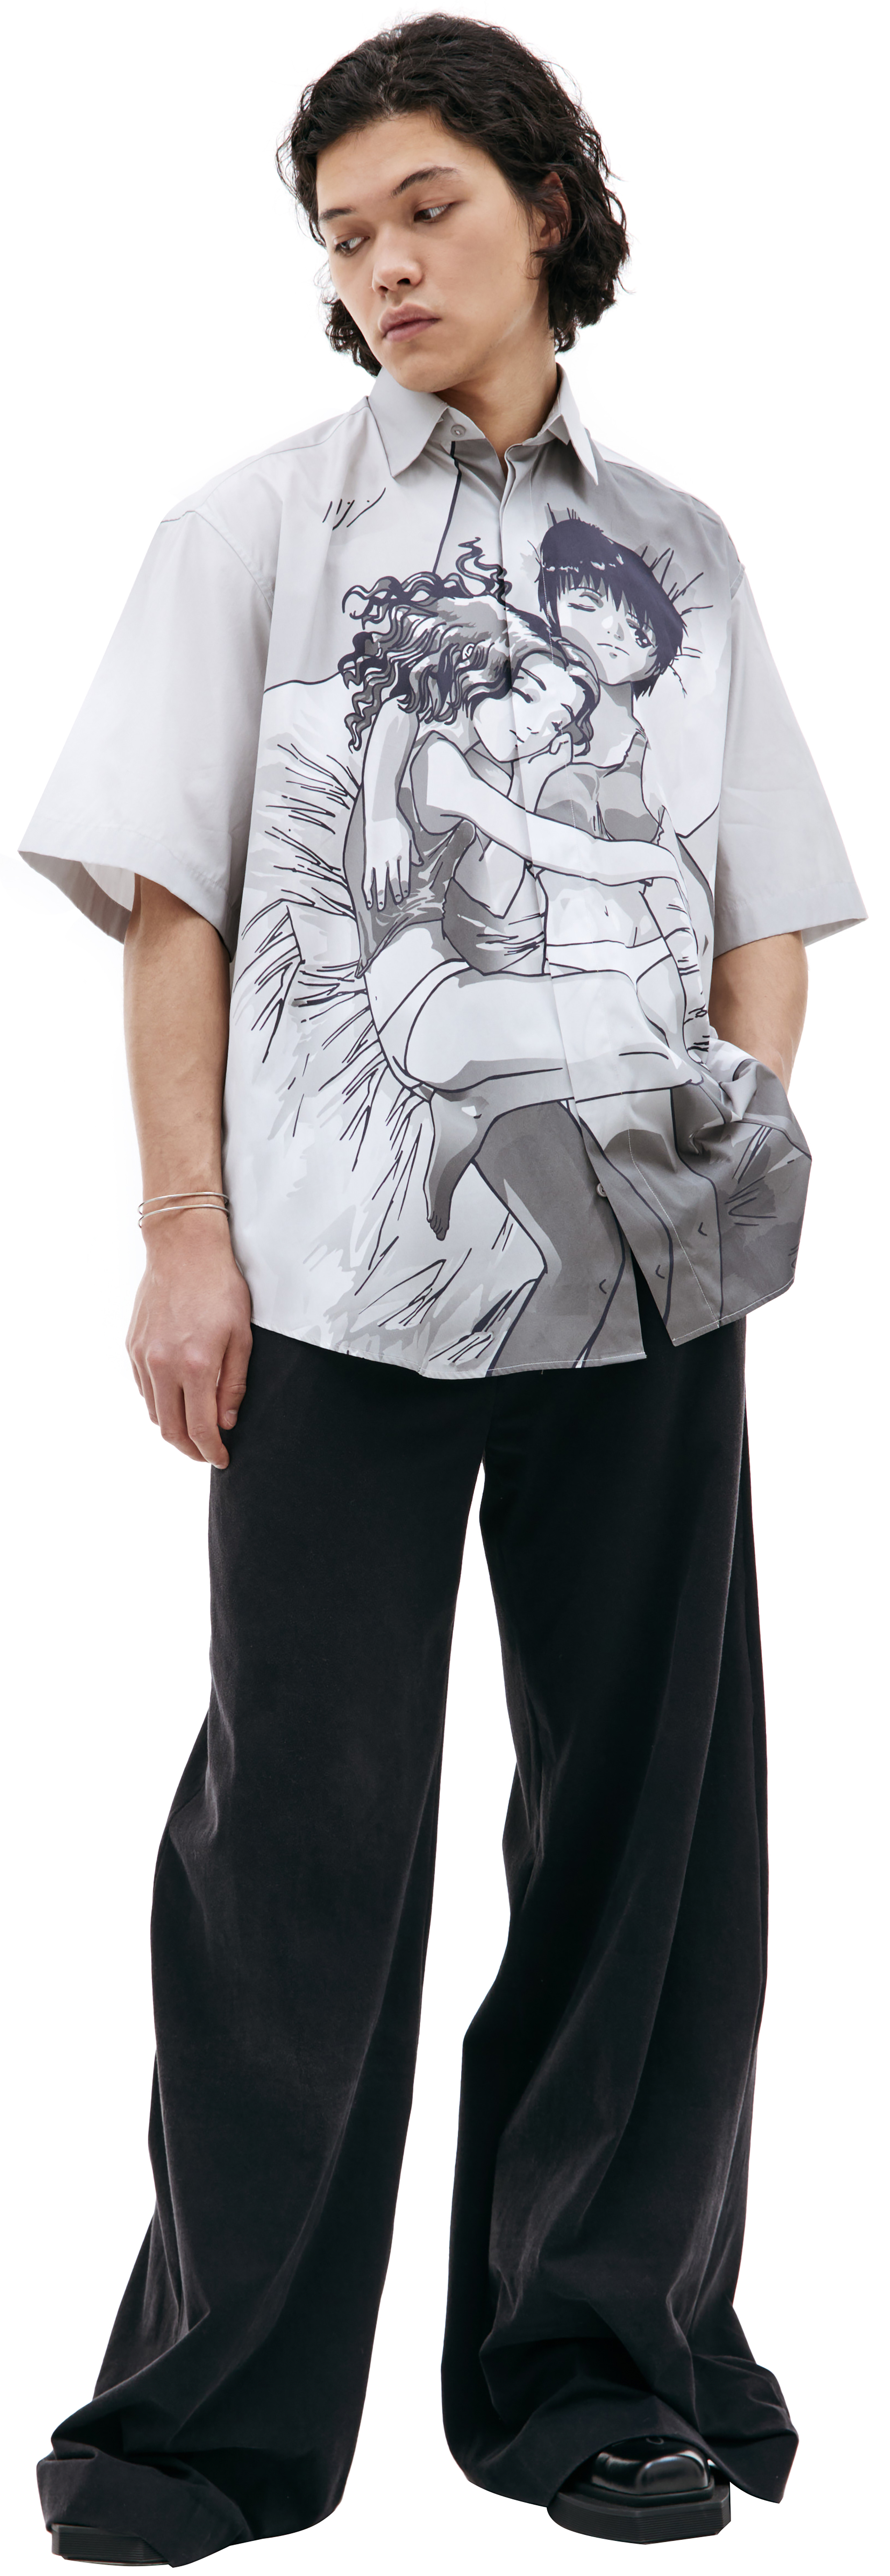 Anime printed shirt